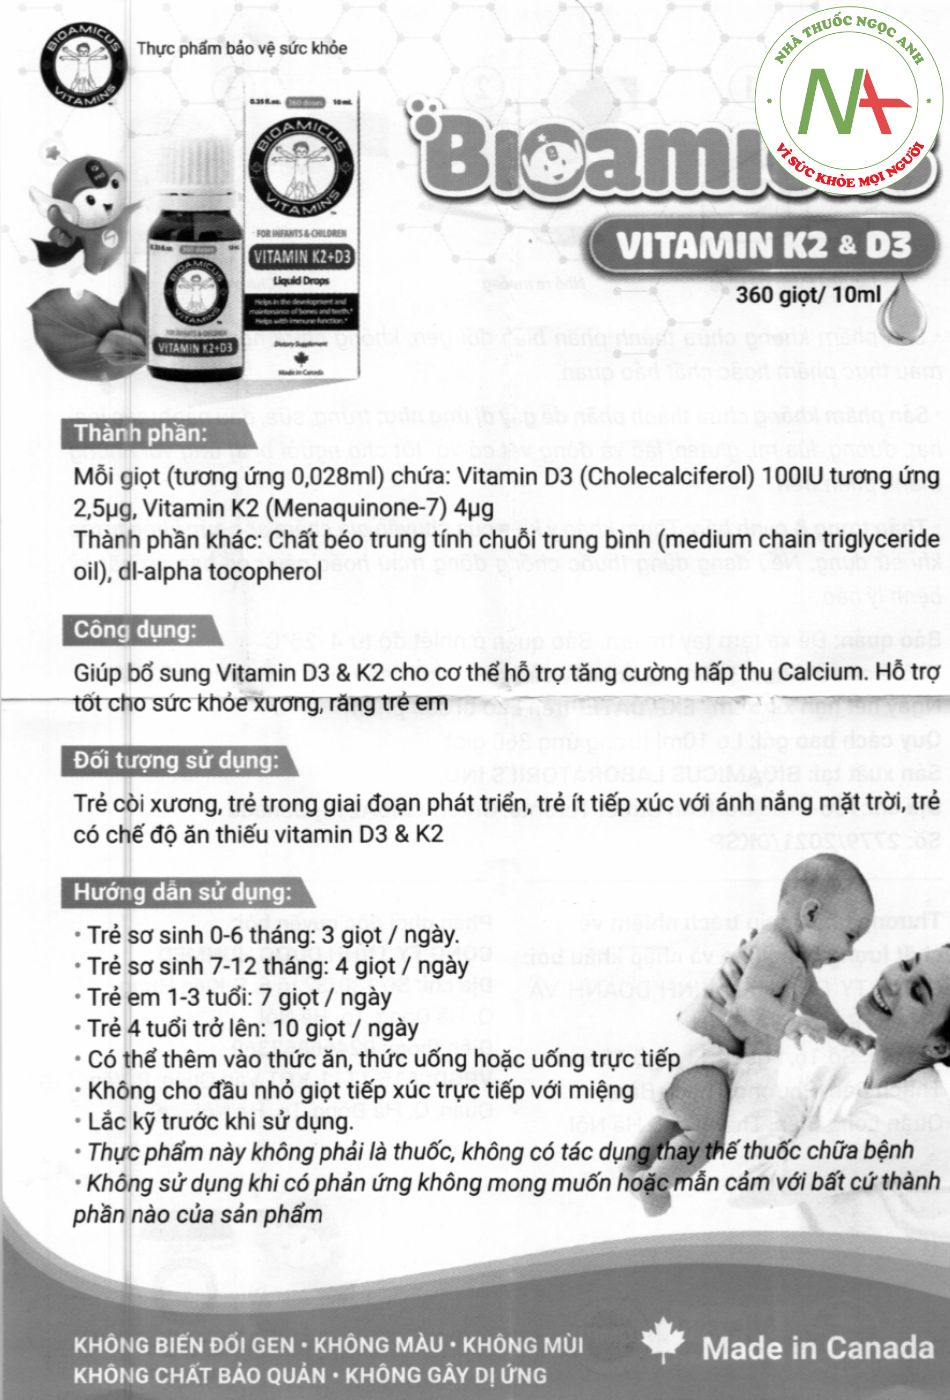 HDSD BioAmicus Vitamin D3K2